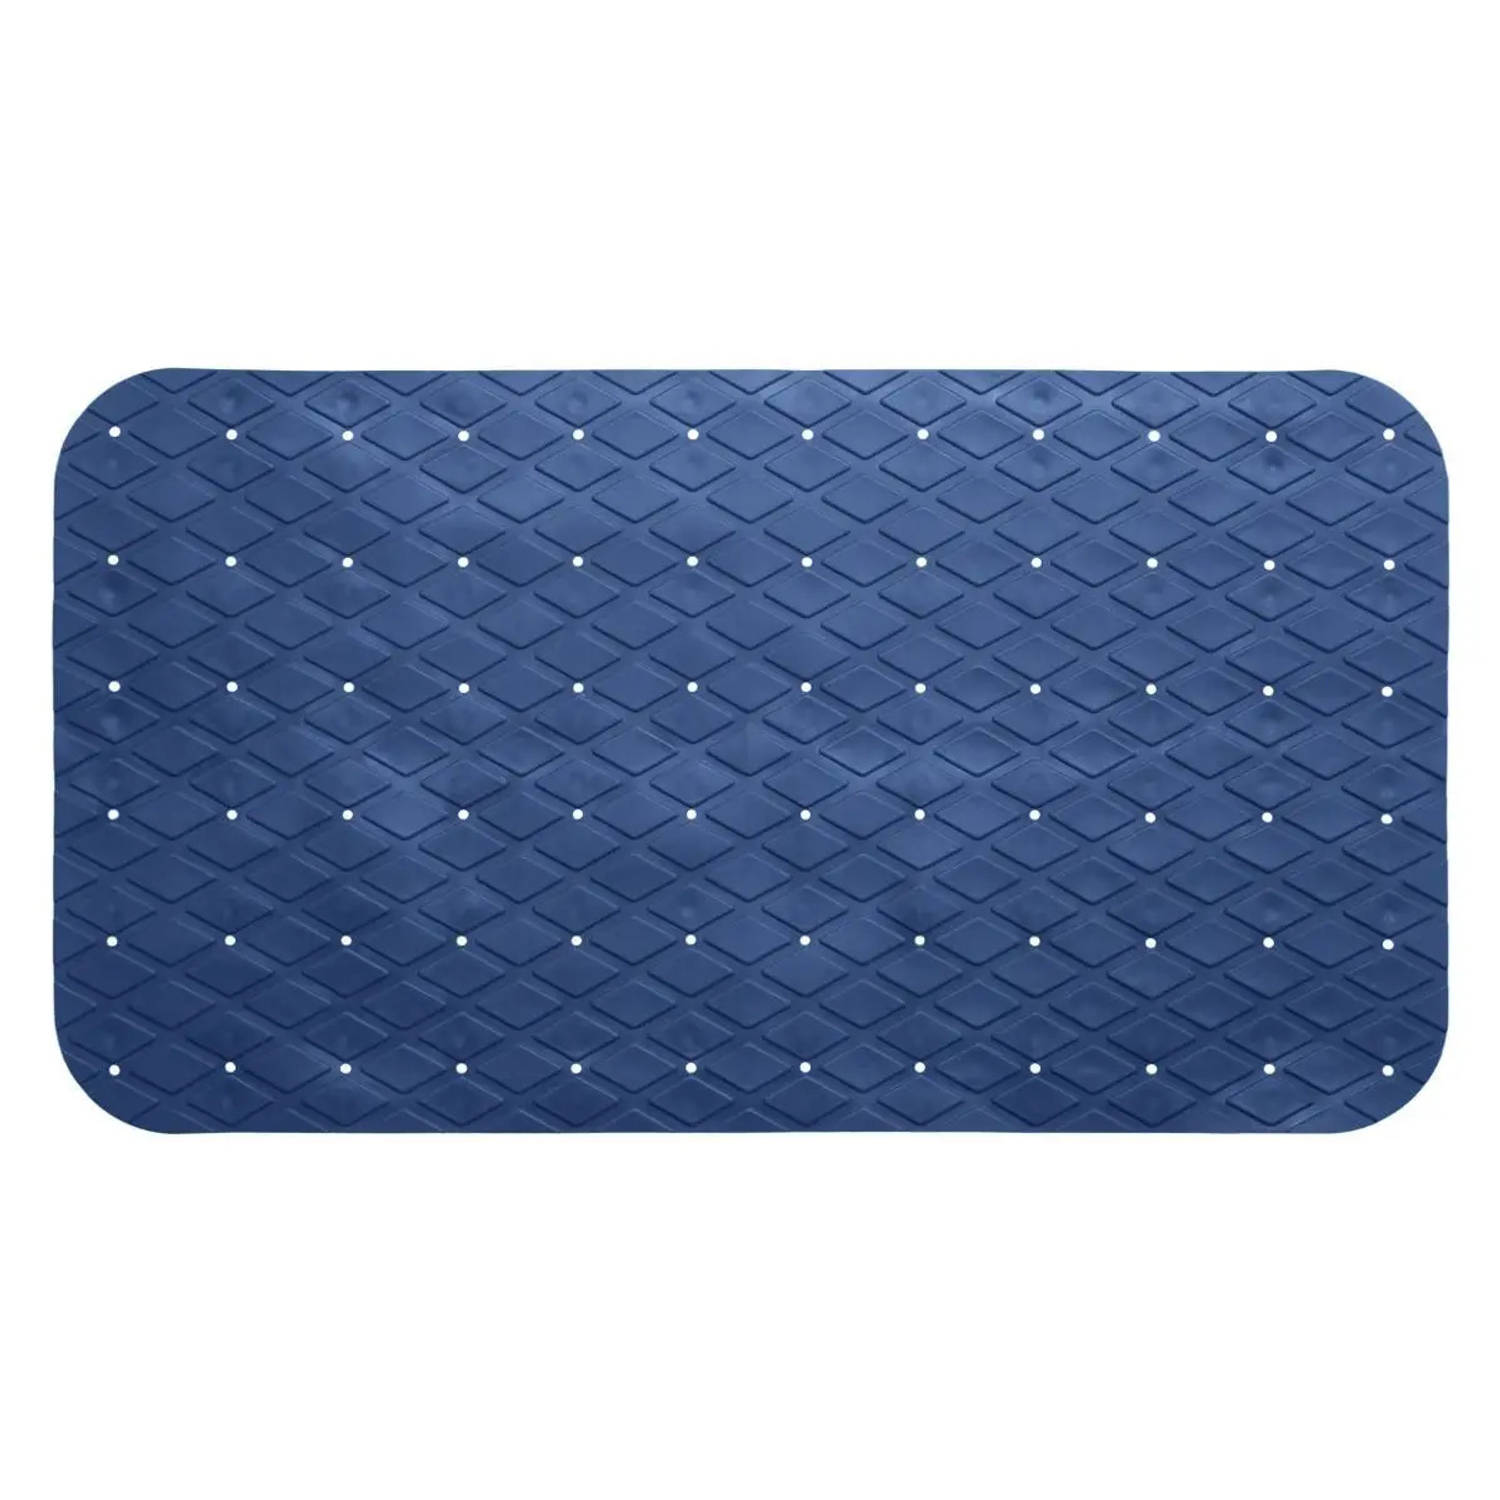 Anti-slip badkamer douche/bad mat blauw 70 x 35 cm rechthoekig - Badmatjes